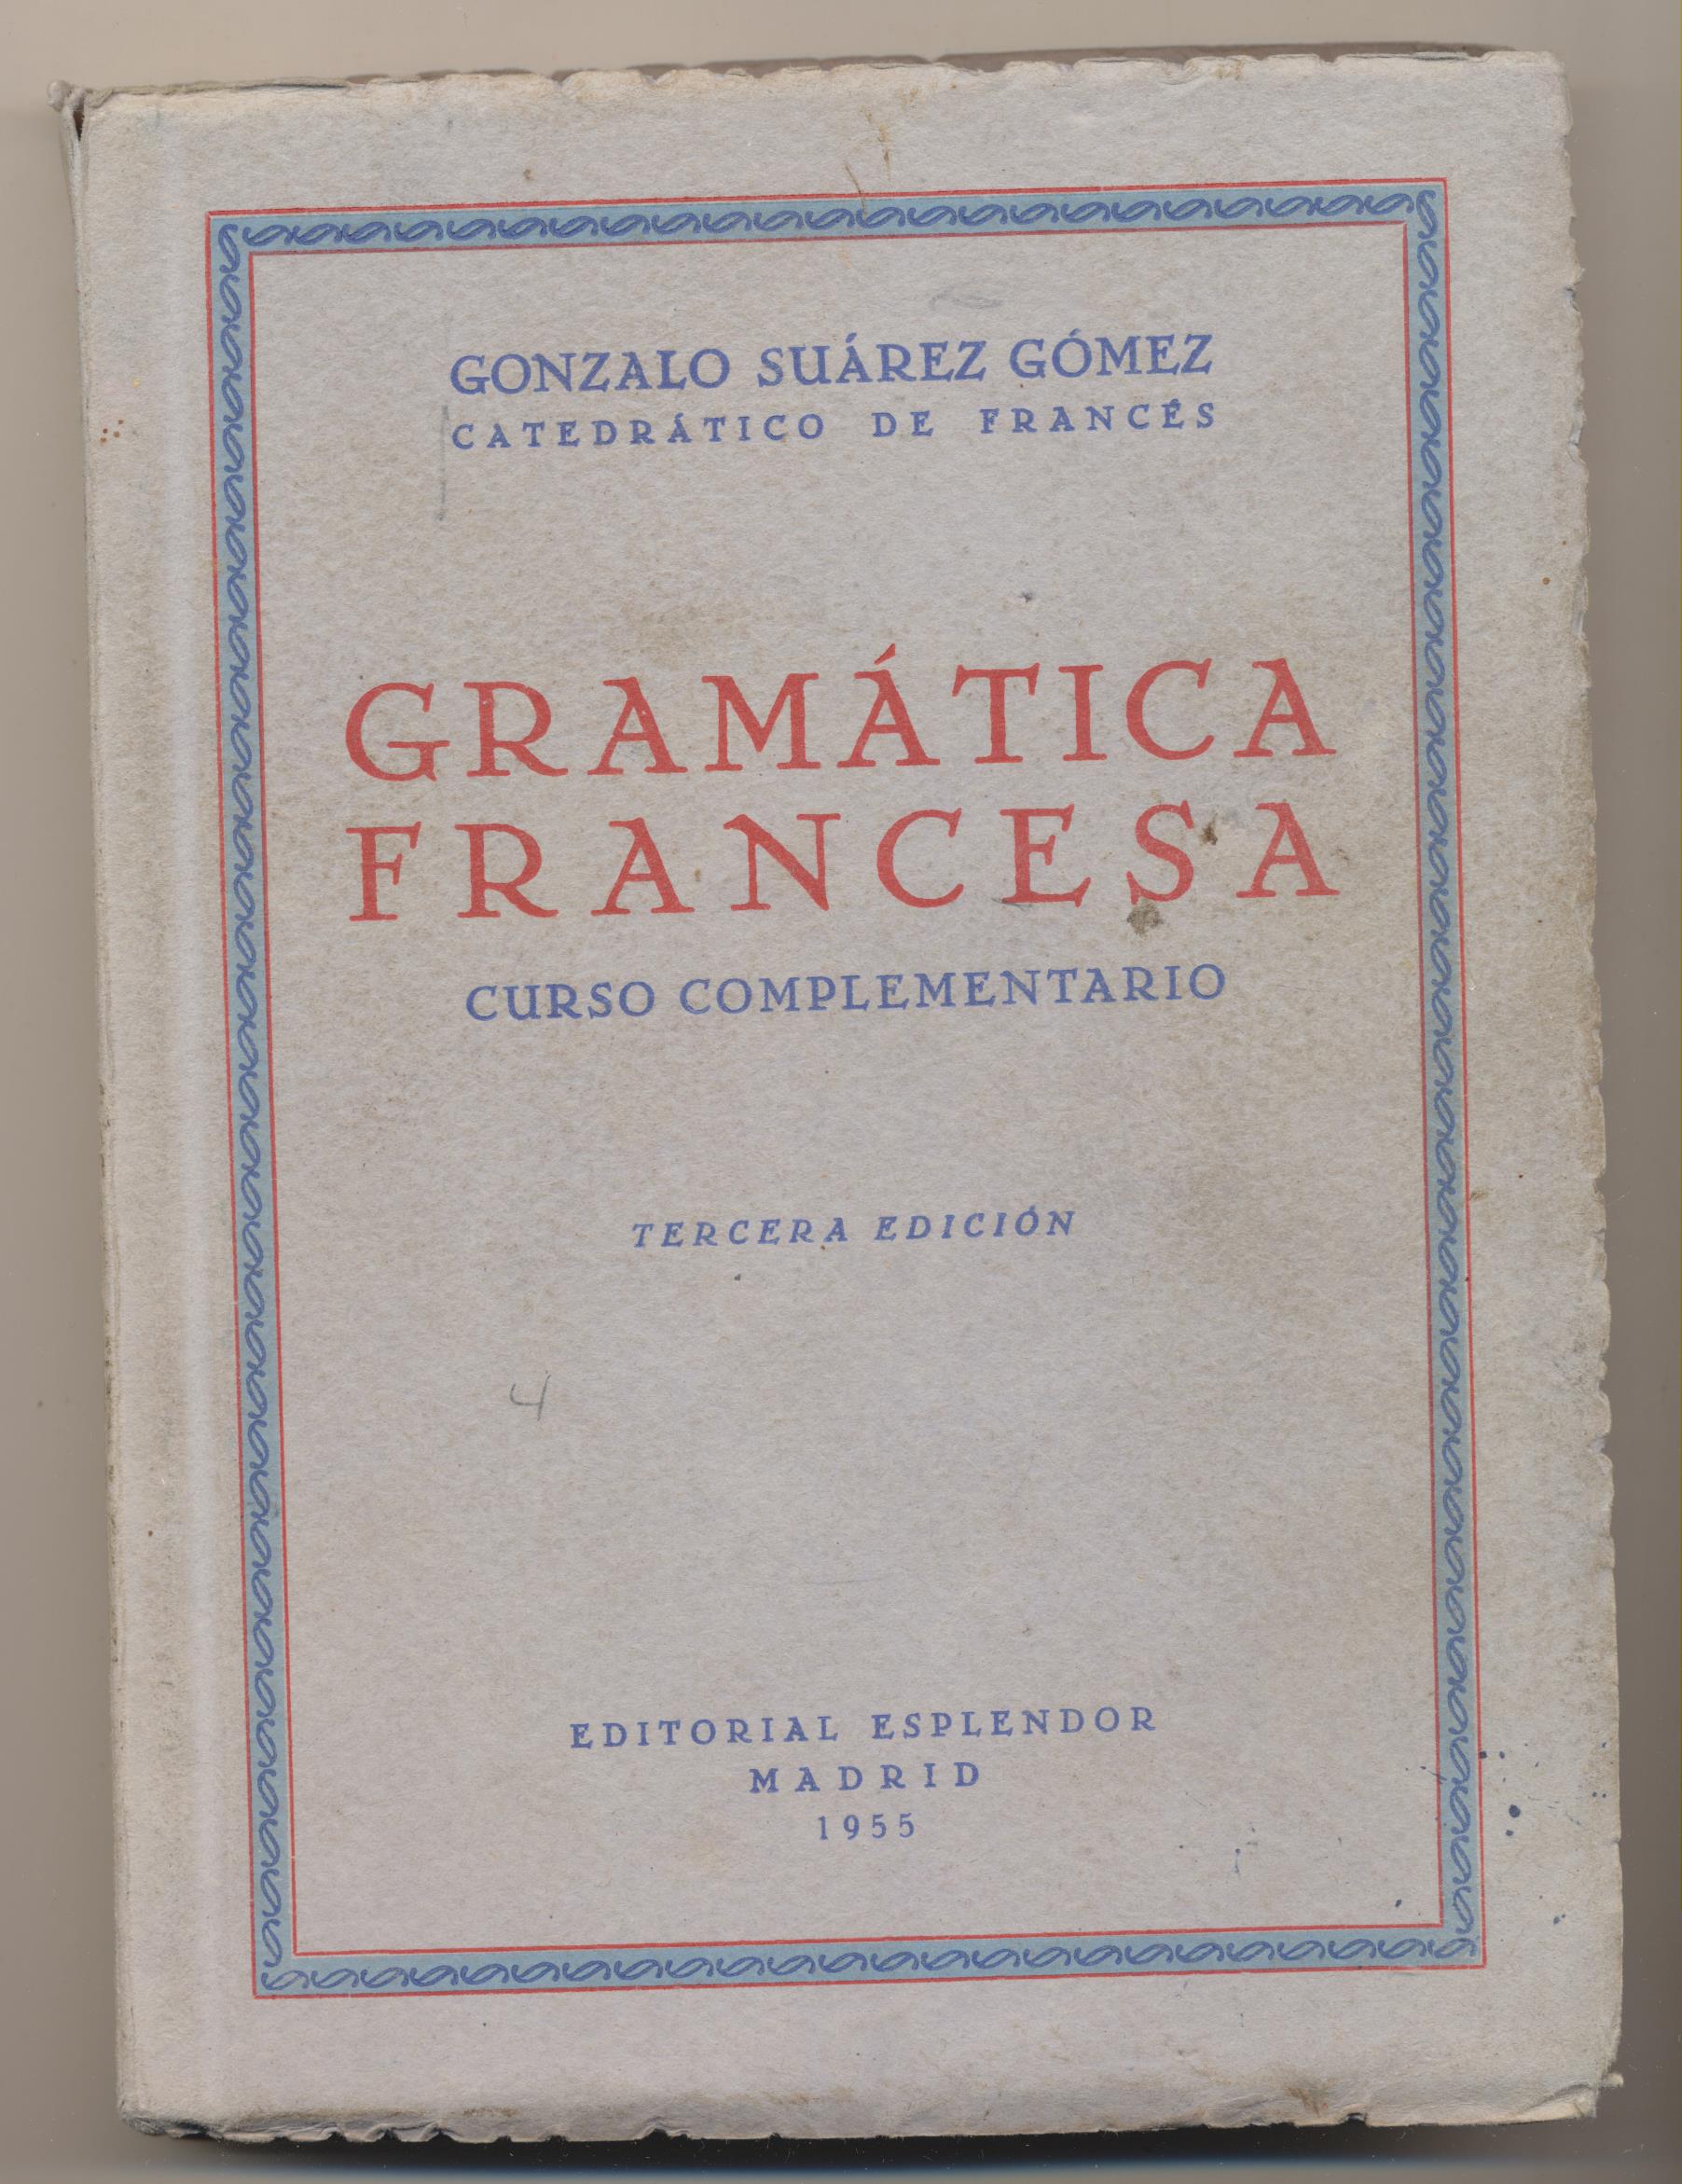 Gonzalo Suarez Gómez. Gramática Francesa. Curso Complementario. Editorial Esplendor 1955